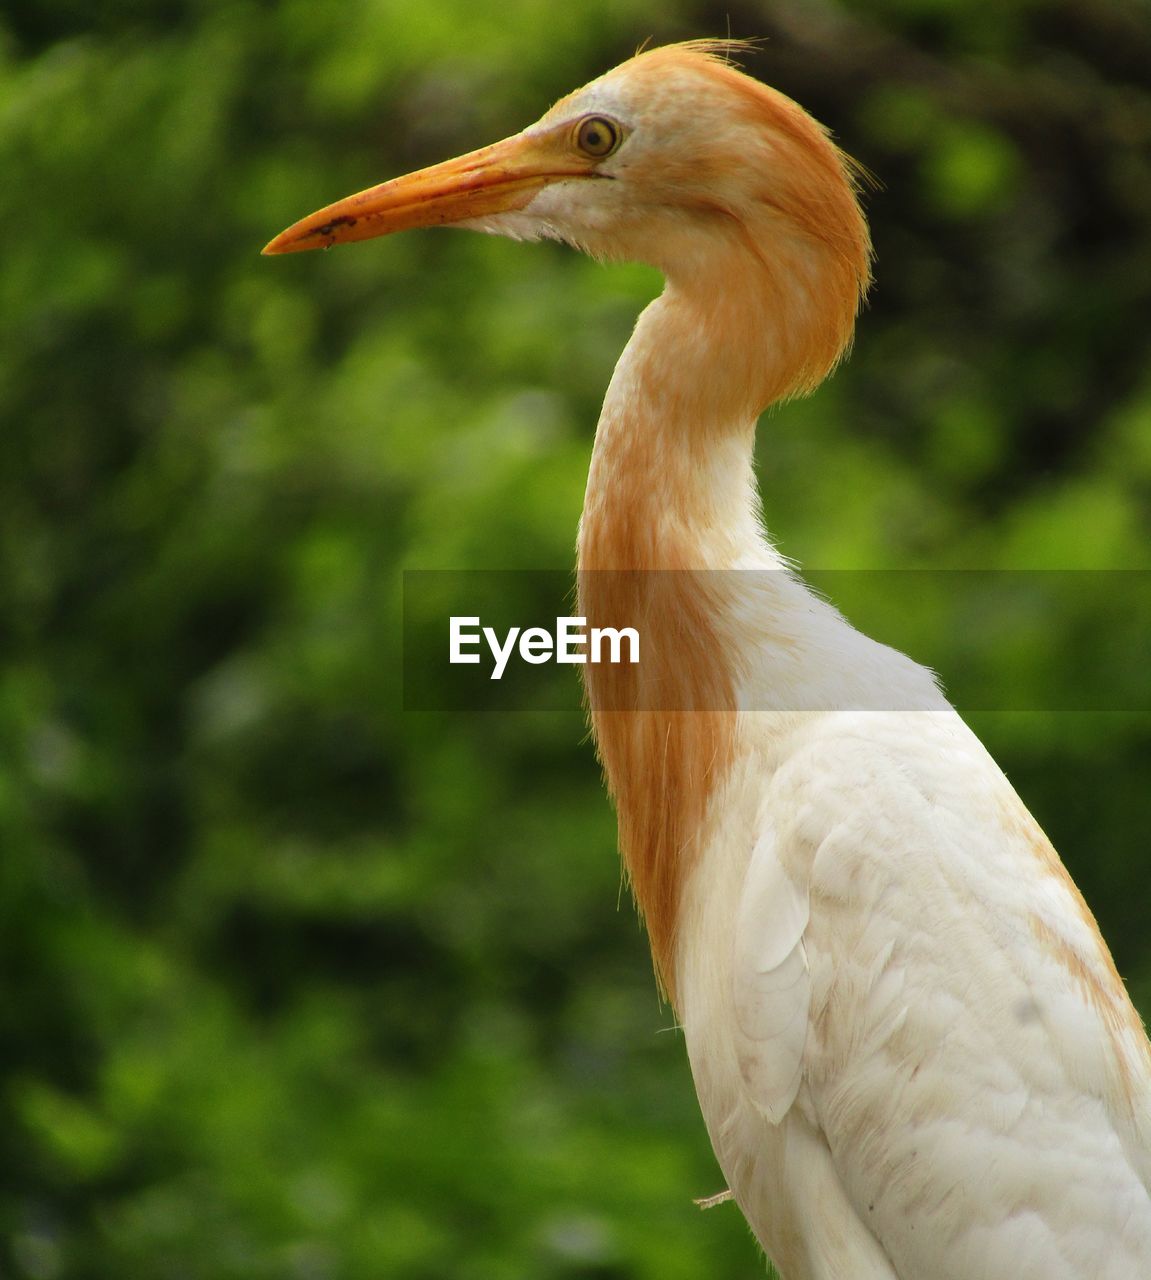 Close-up of crane bird.